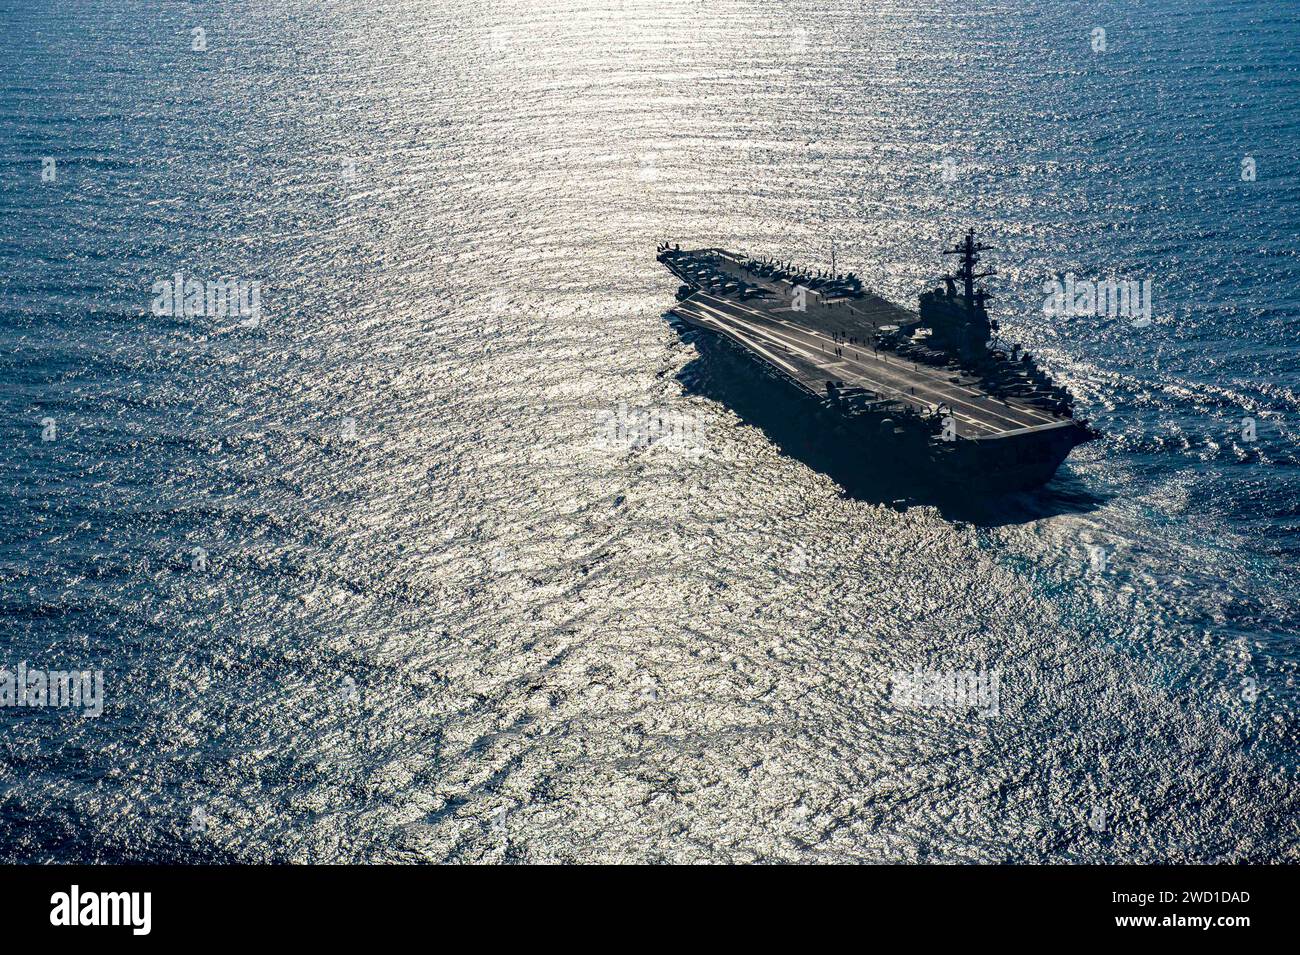 20 luglio 2017 - la portaerei USS George H.W. Bush (CVN 77) transita nel Mar Mediterraneo a sostegno dell'operazione Inherent Resolve. Foto Stock